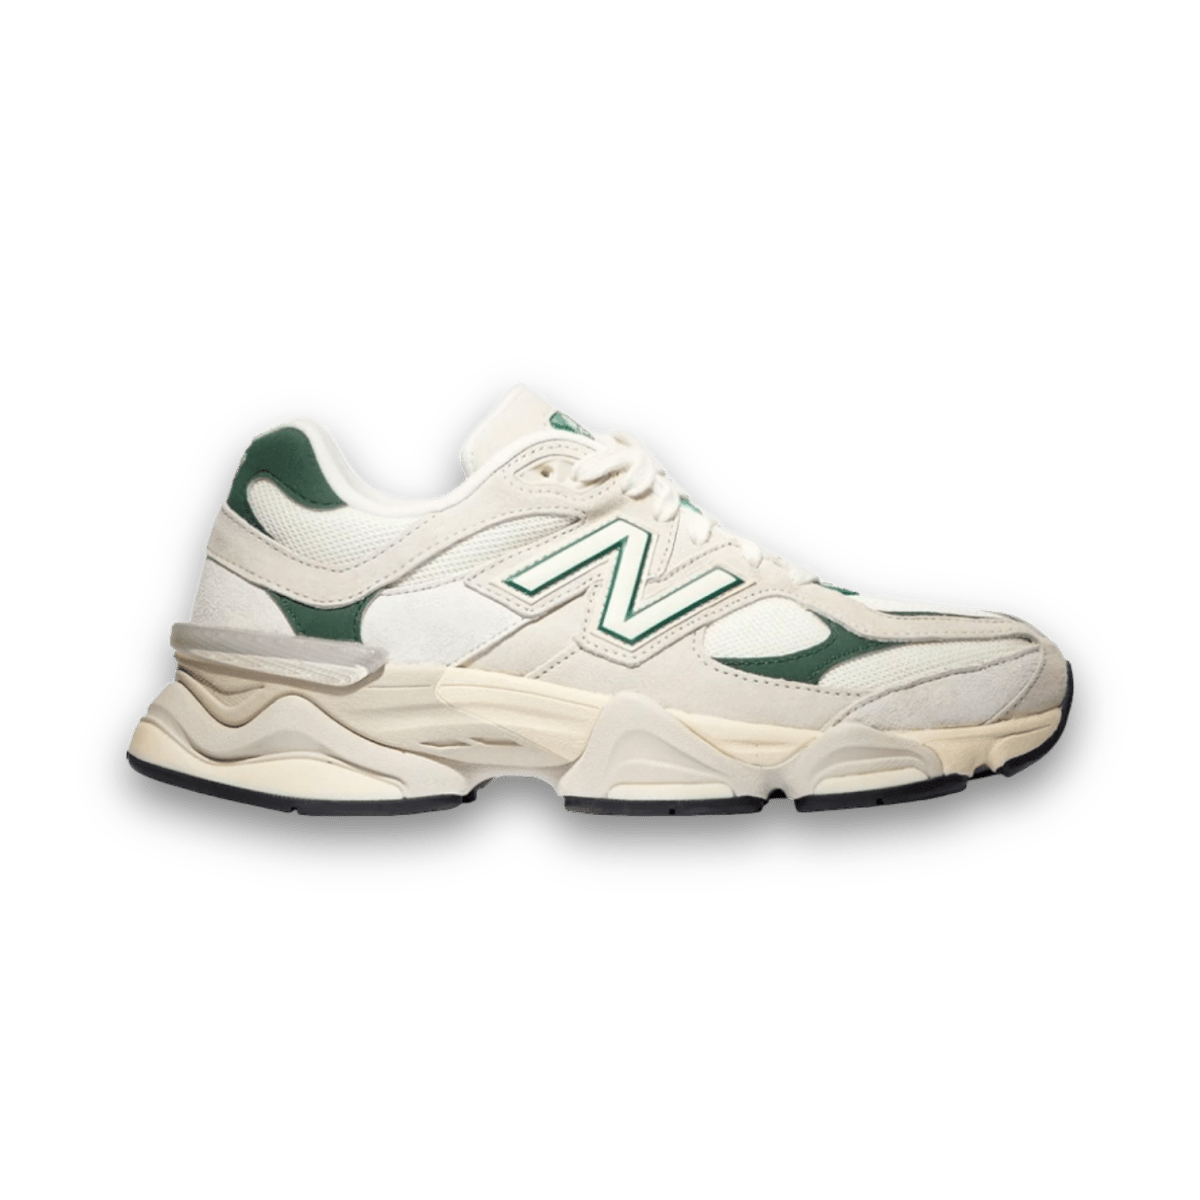 New Balance 9060 'White & Green" - Low Sneaker - Jawns on Fire Sneakers & Streetwear